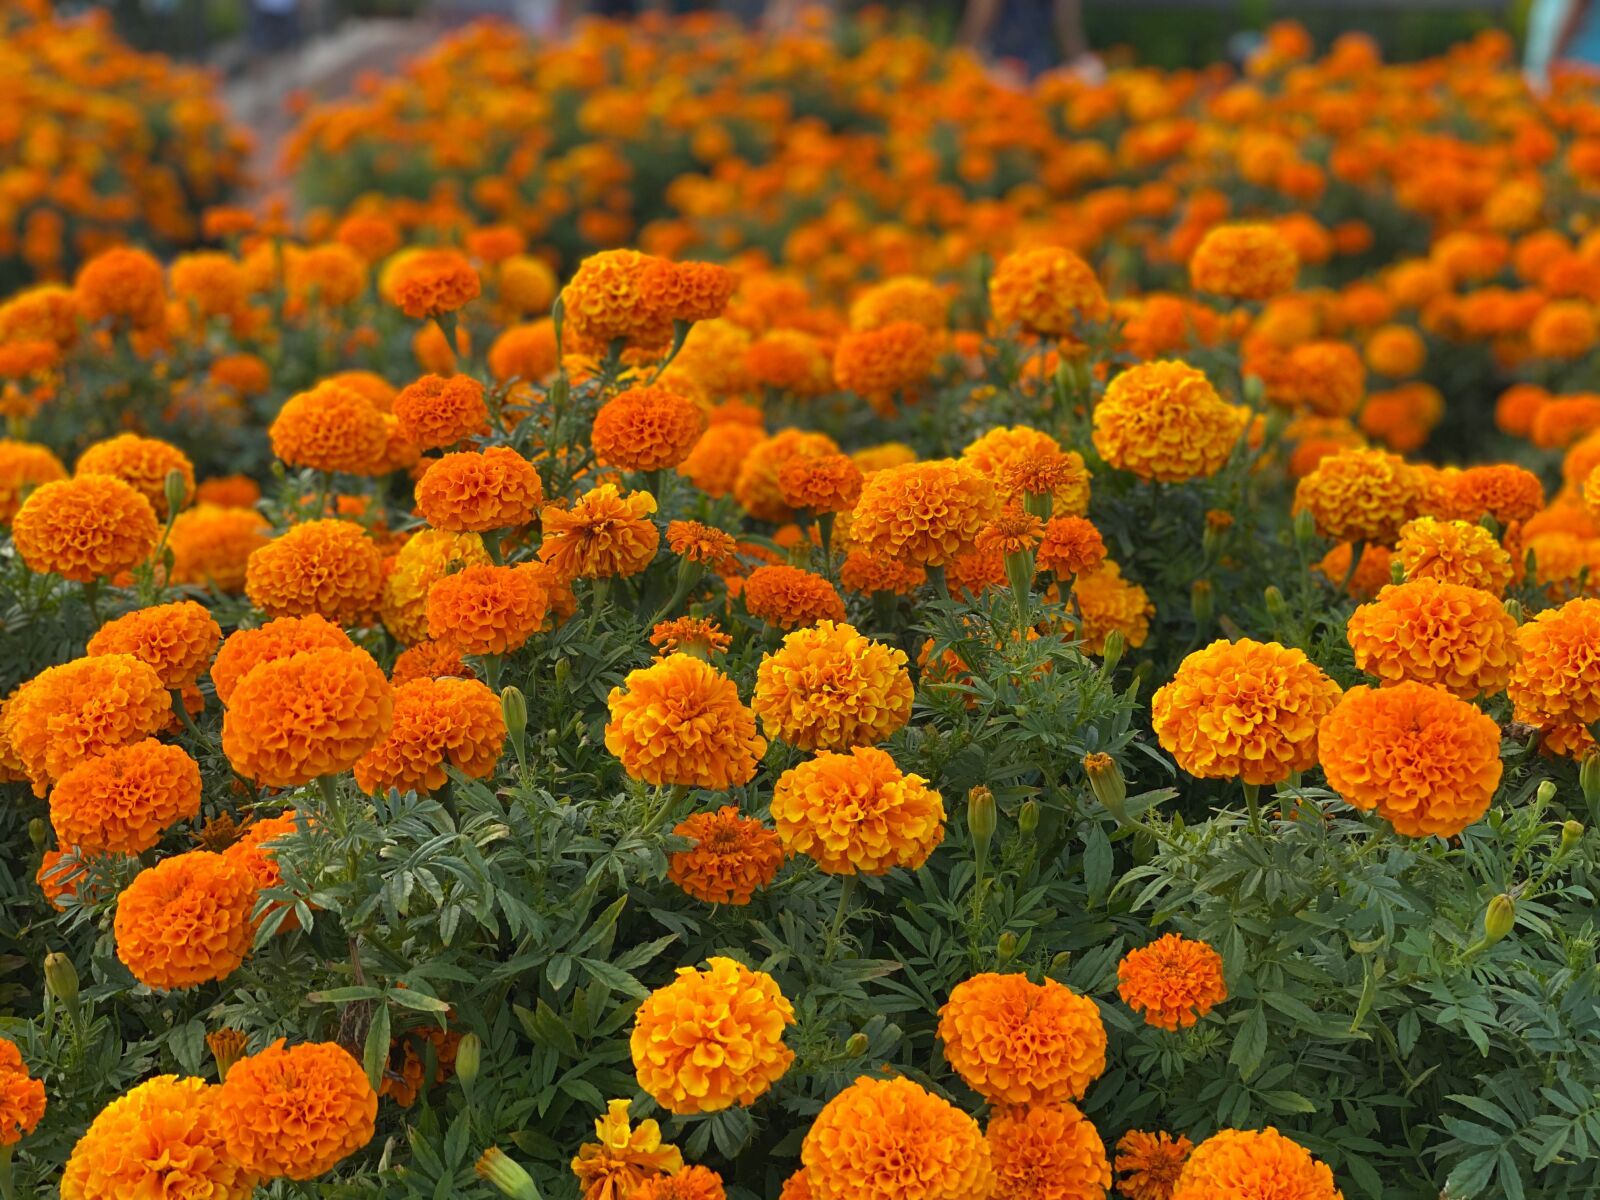 iPhone 11 Pro back dual camera 6mm f/2 sample photo. Marigold, bushes, orange photography